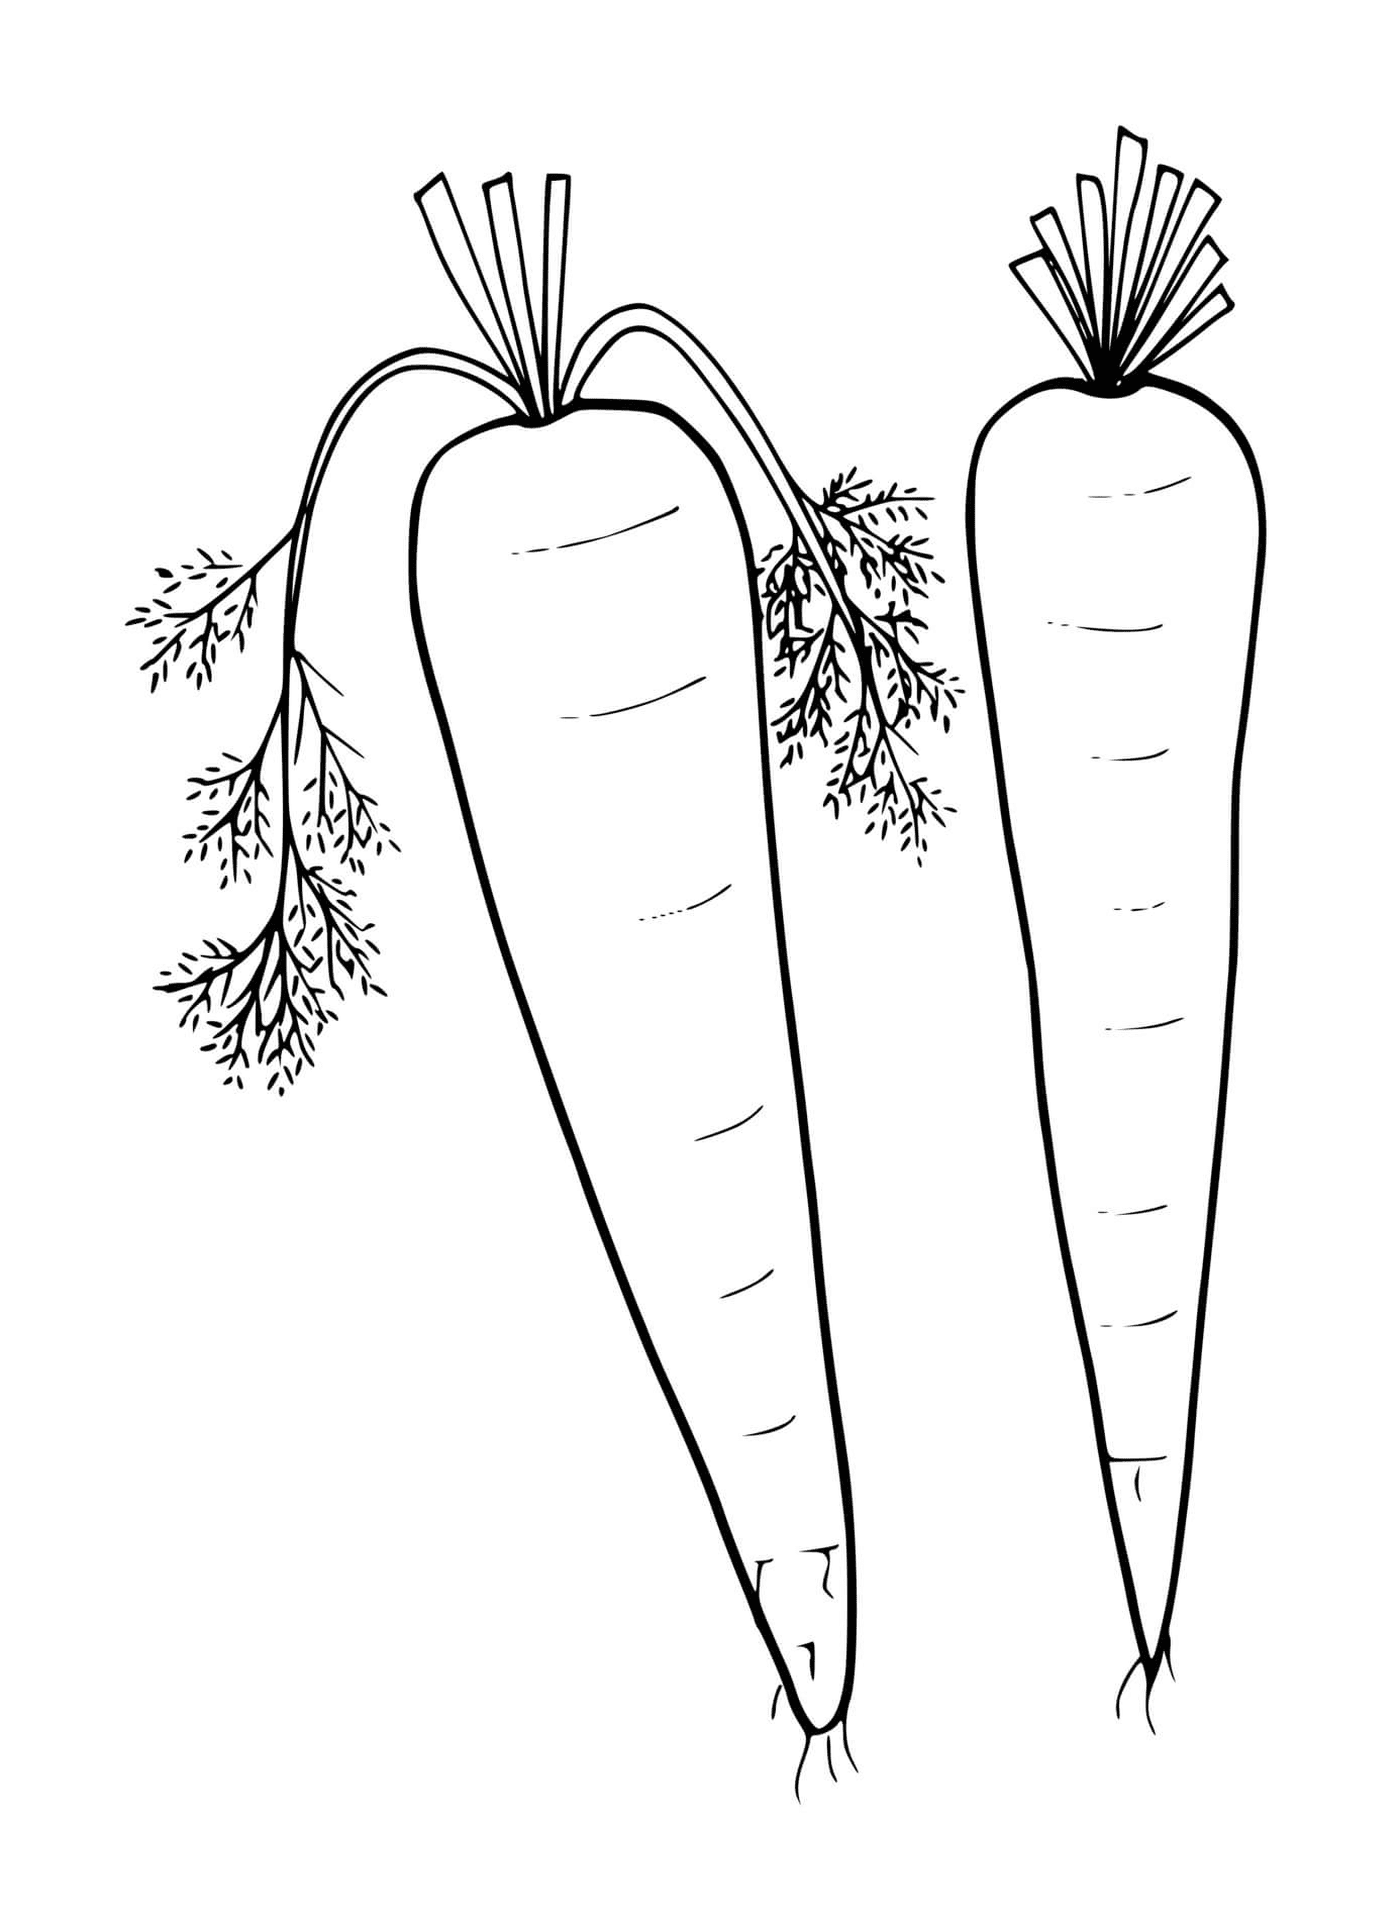  Carota fresca, due carote su sfondo bianco 